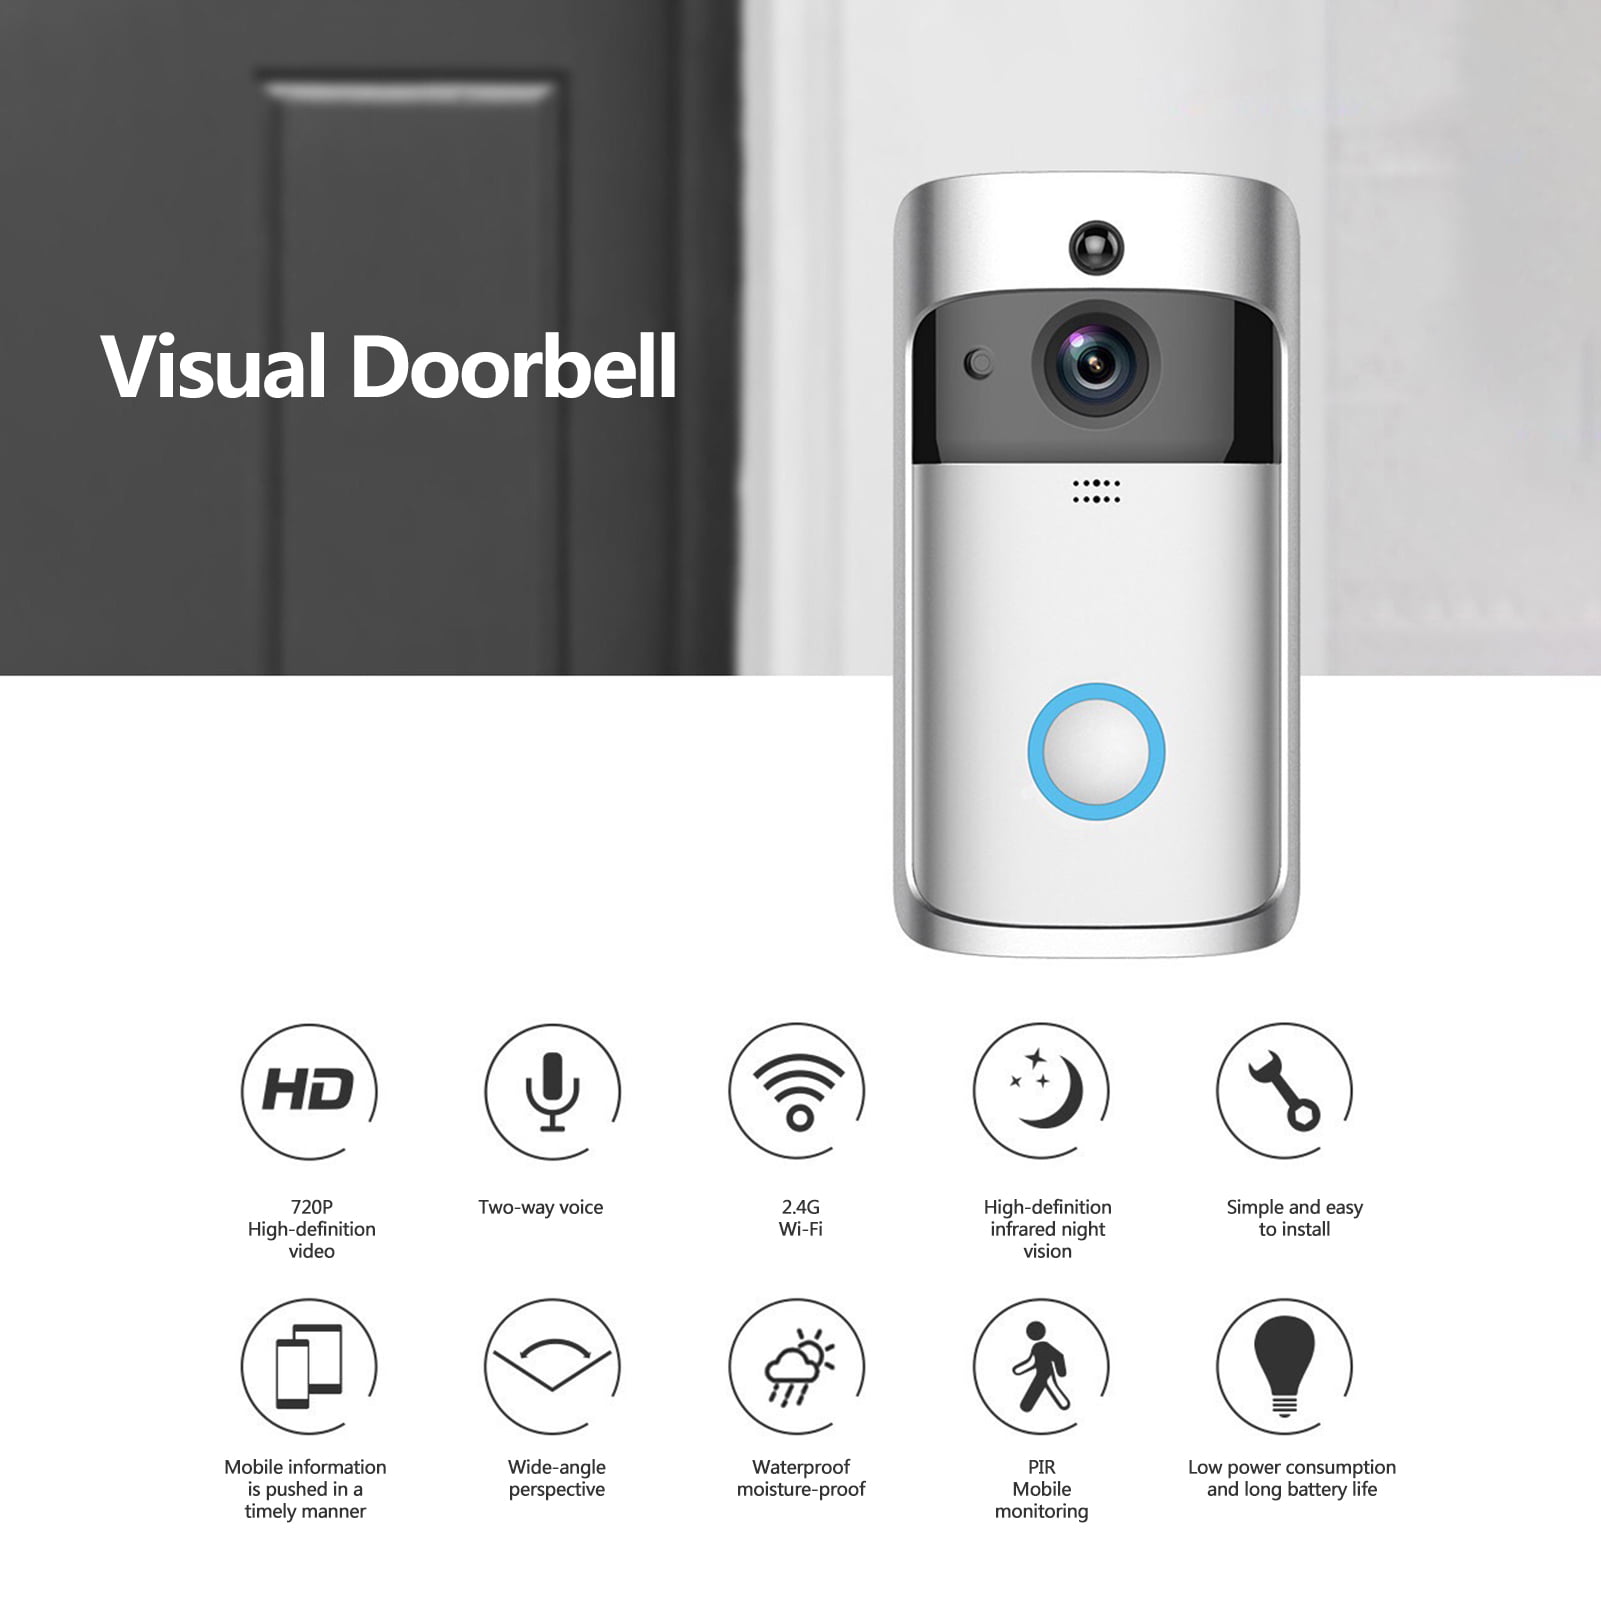 Details about   US Wireless WiFi Video Doorbell Smart Door Intercom Security 1080P Camera Bell